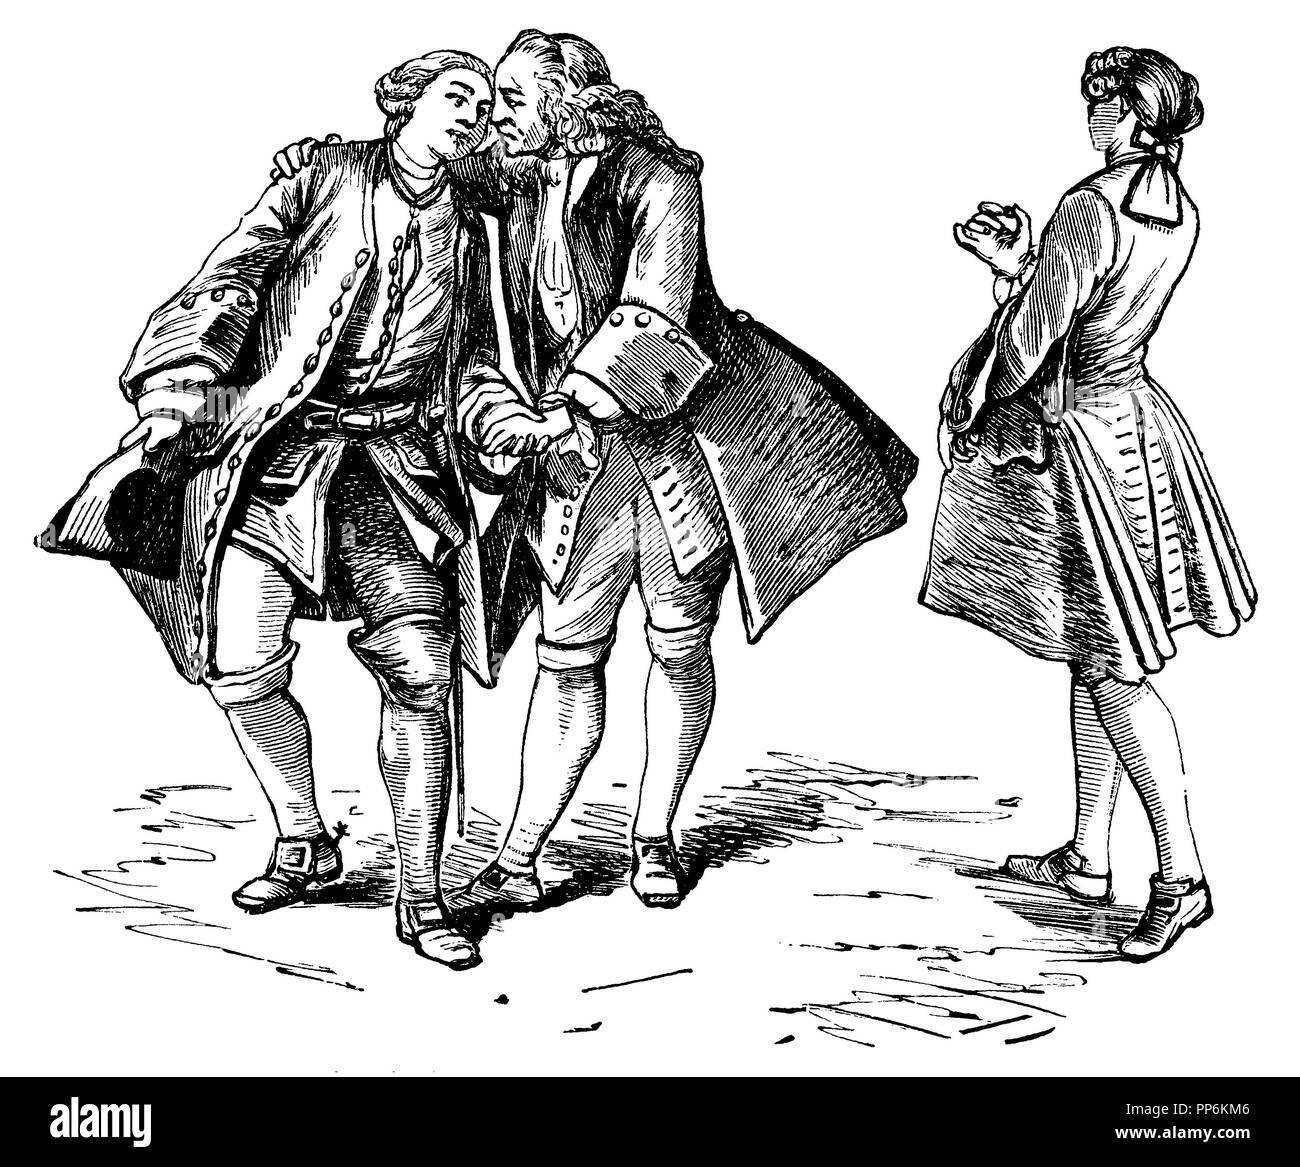 Braid y trajes de la revolución (1720-1750), Francia, traje burgués  (1730-1740), anonym 1896 Fotografía de stock - Alamy